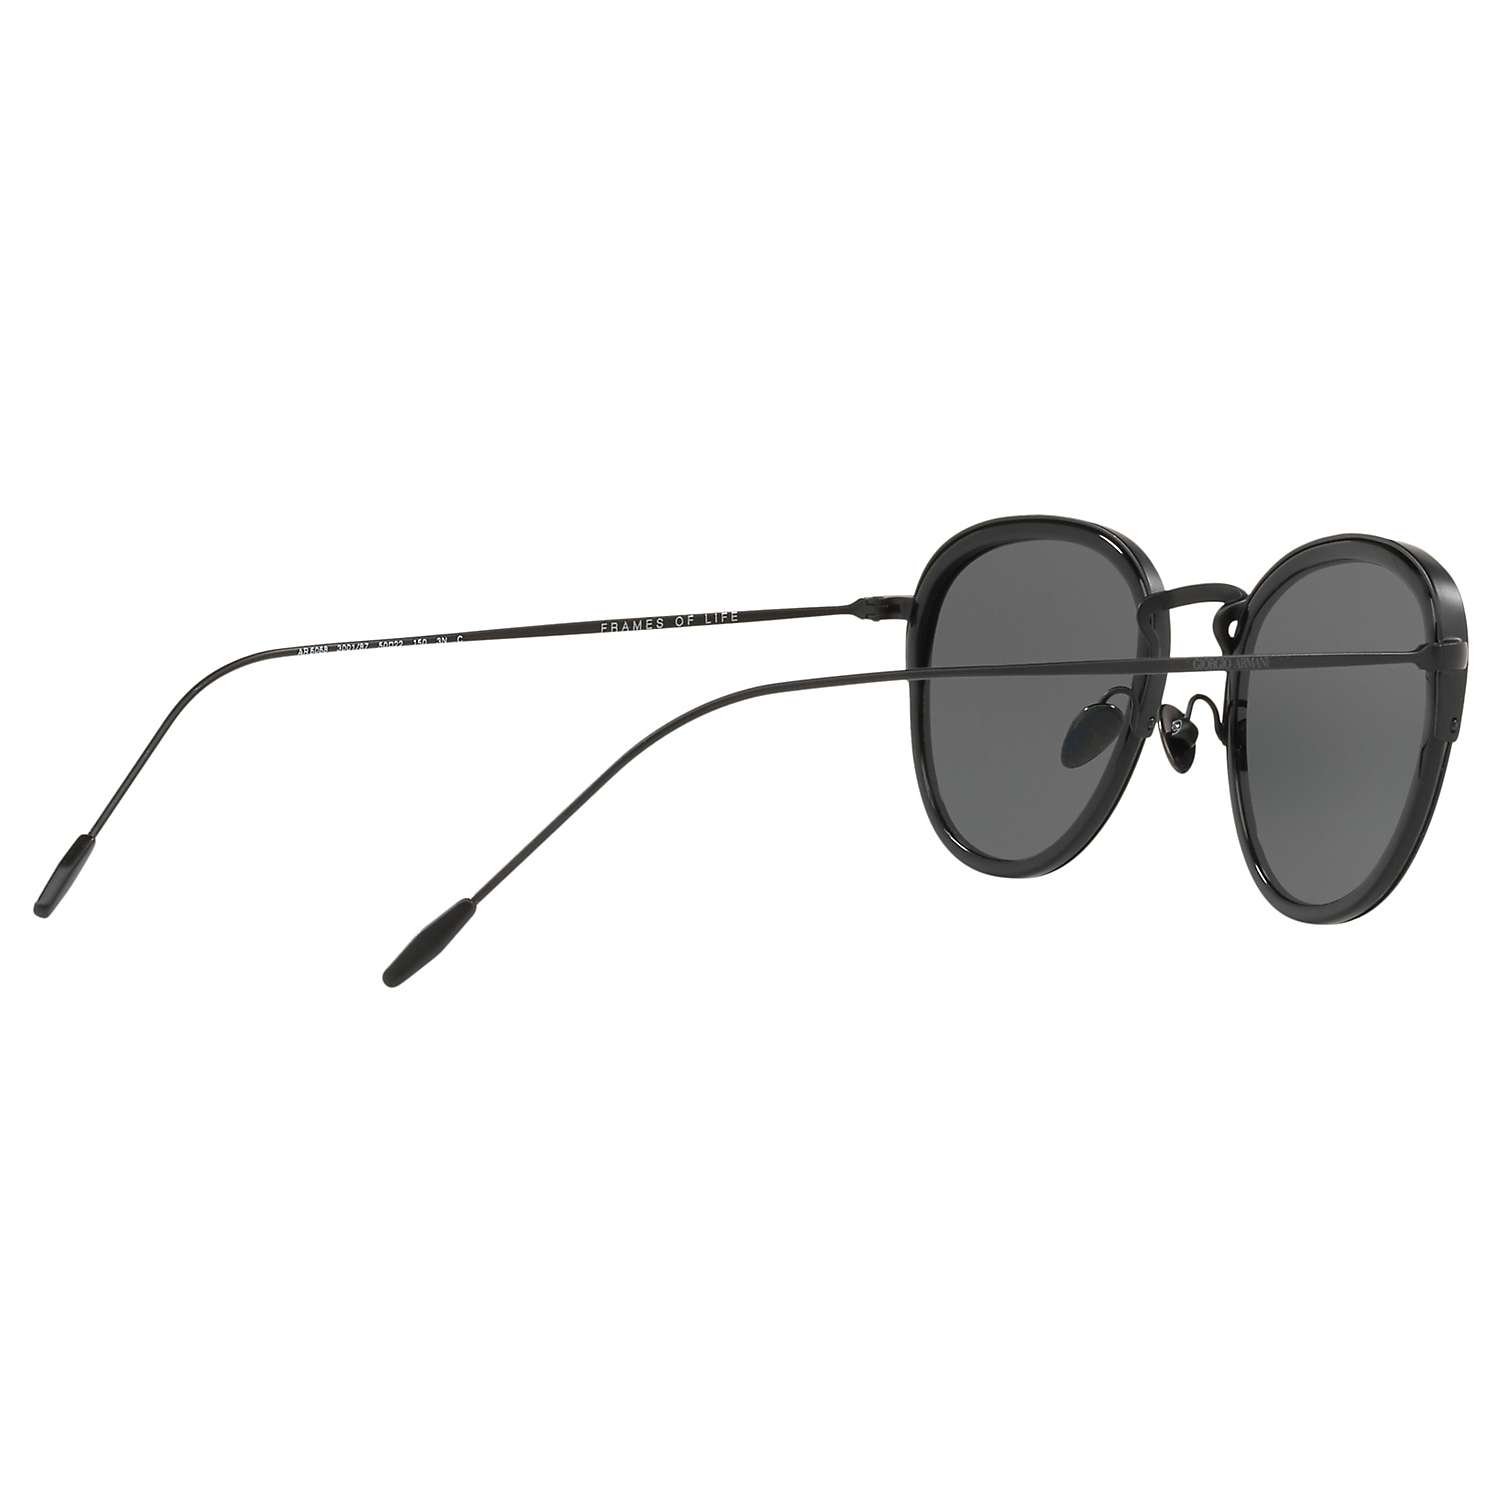 Buy Giorgio Armani AR6068 Men's Frames of Life Round Sunglasses Online at johnlewis.com